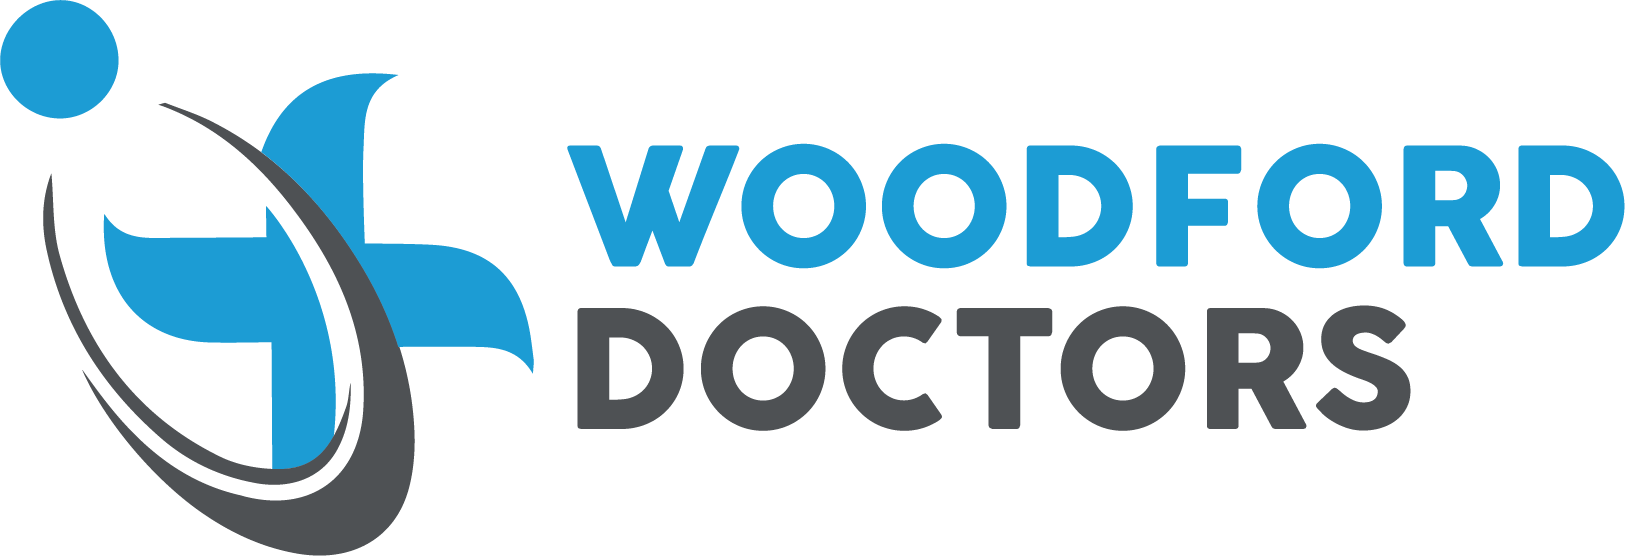 IMSG - Woodford Doctors